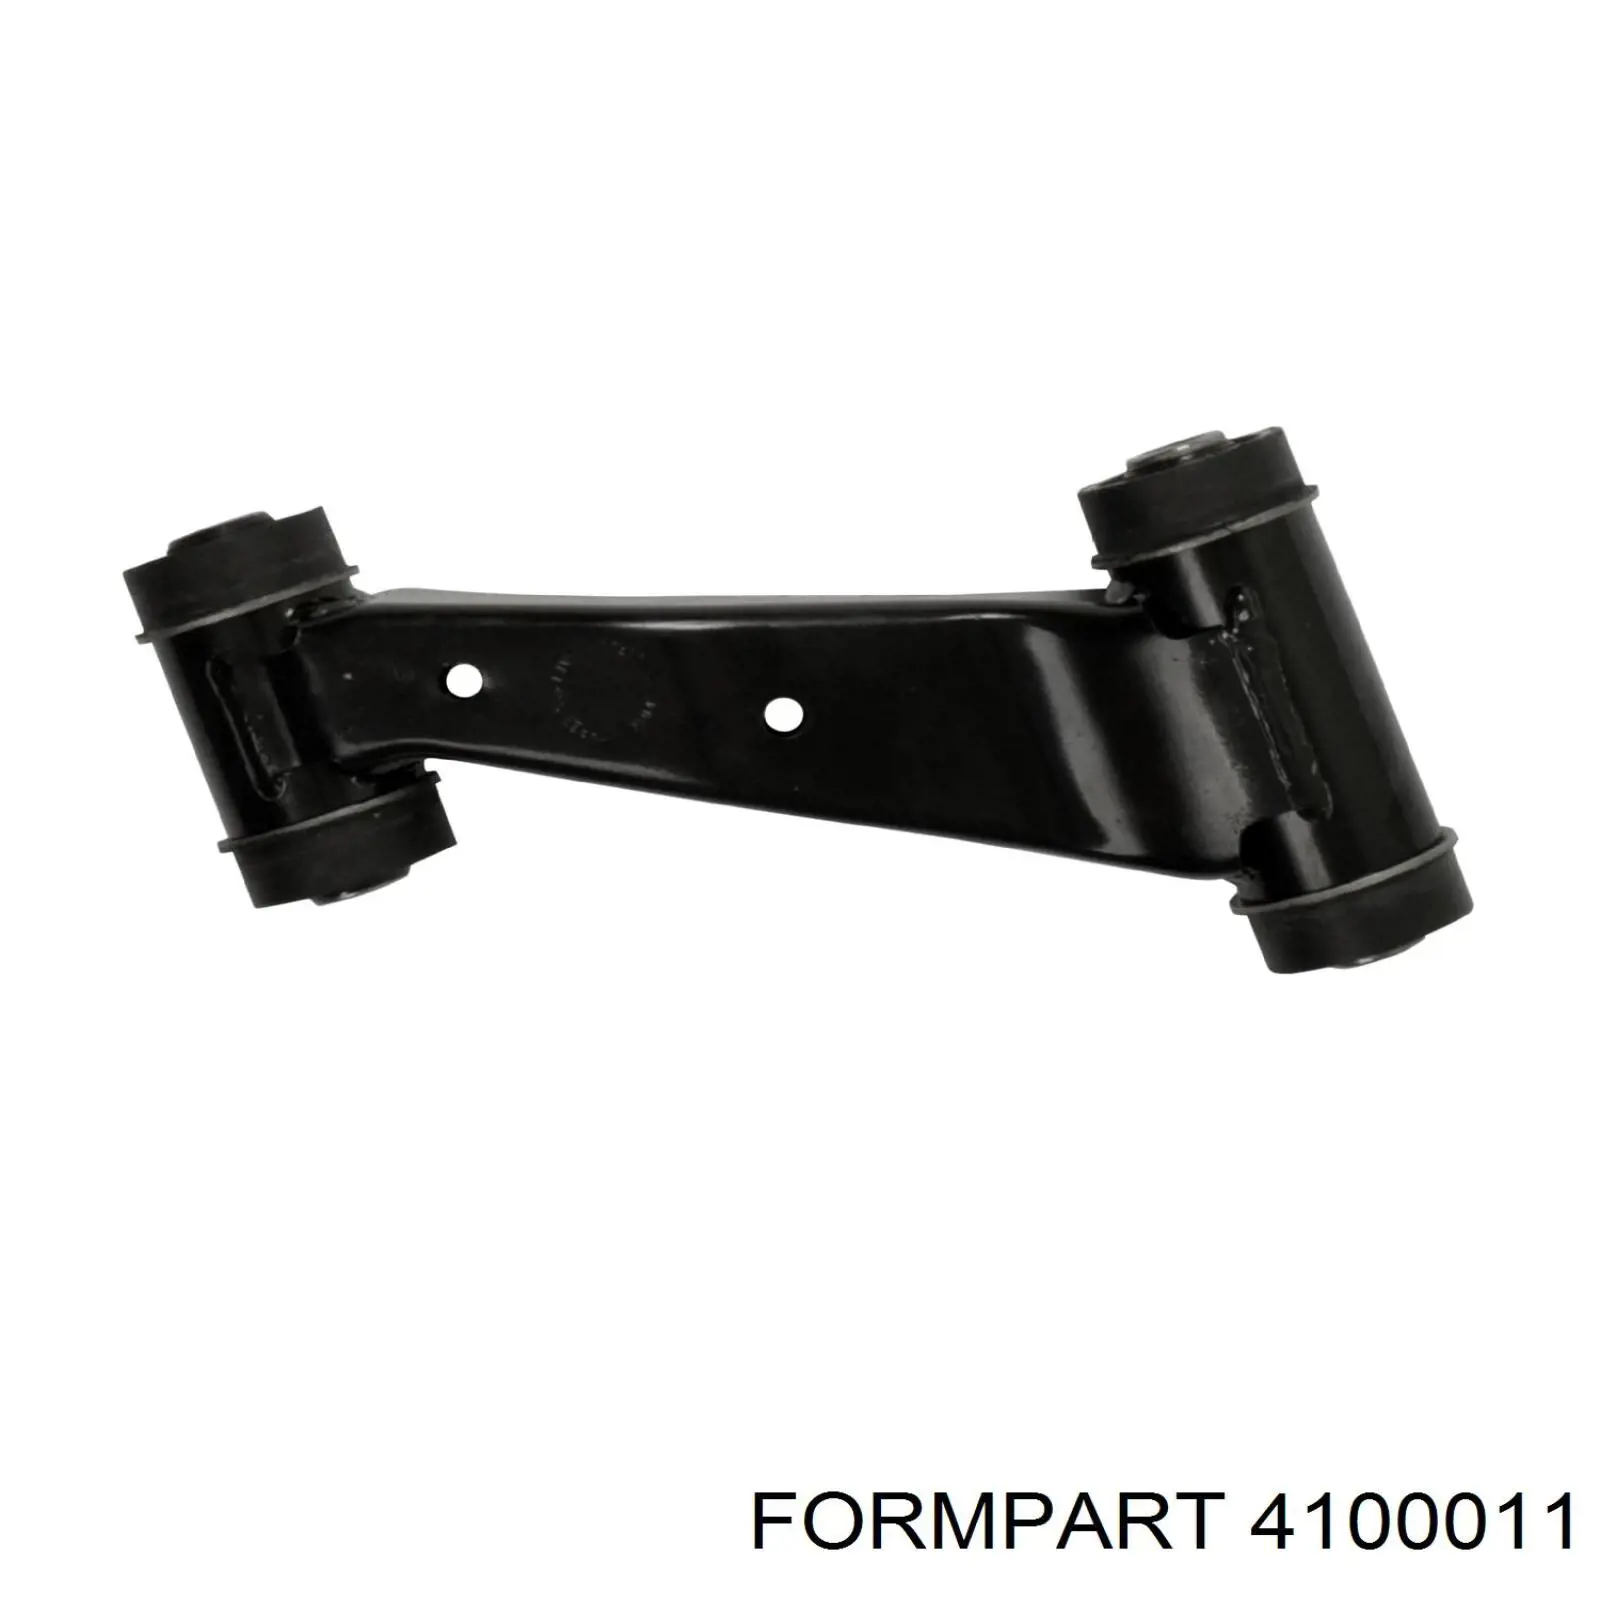 4100011 Formpart/Otoform silentblock de brazo de suspensión delantero superior